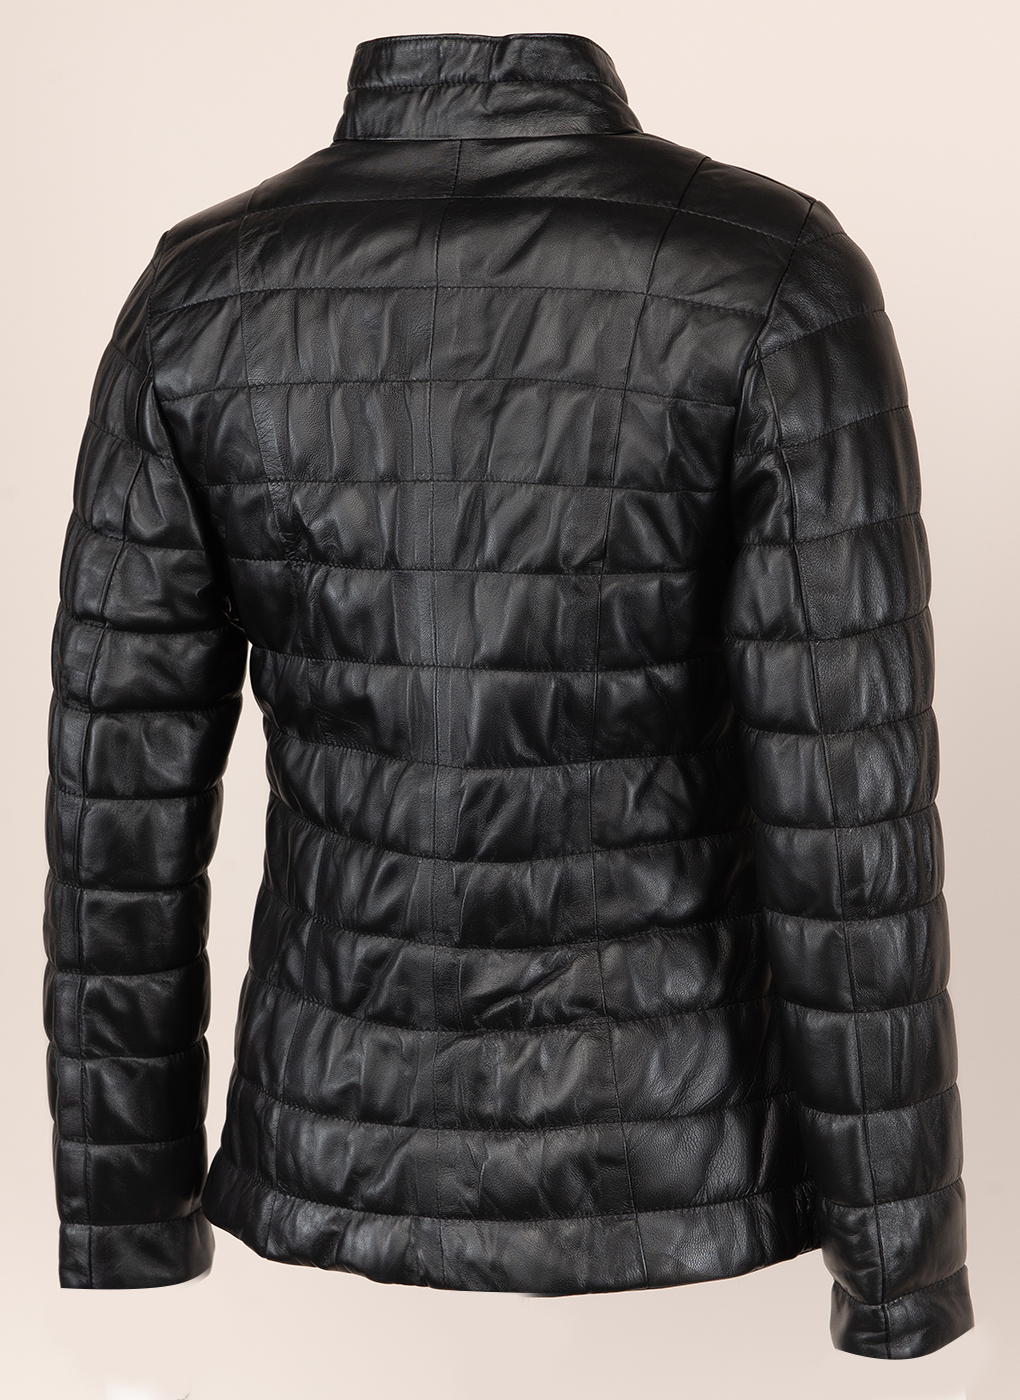 Кожаная куртка женская Каляев 156060 черная 48